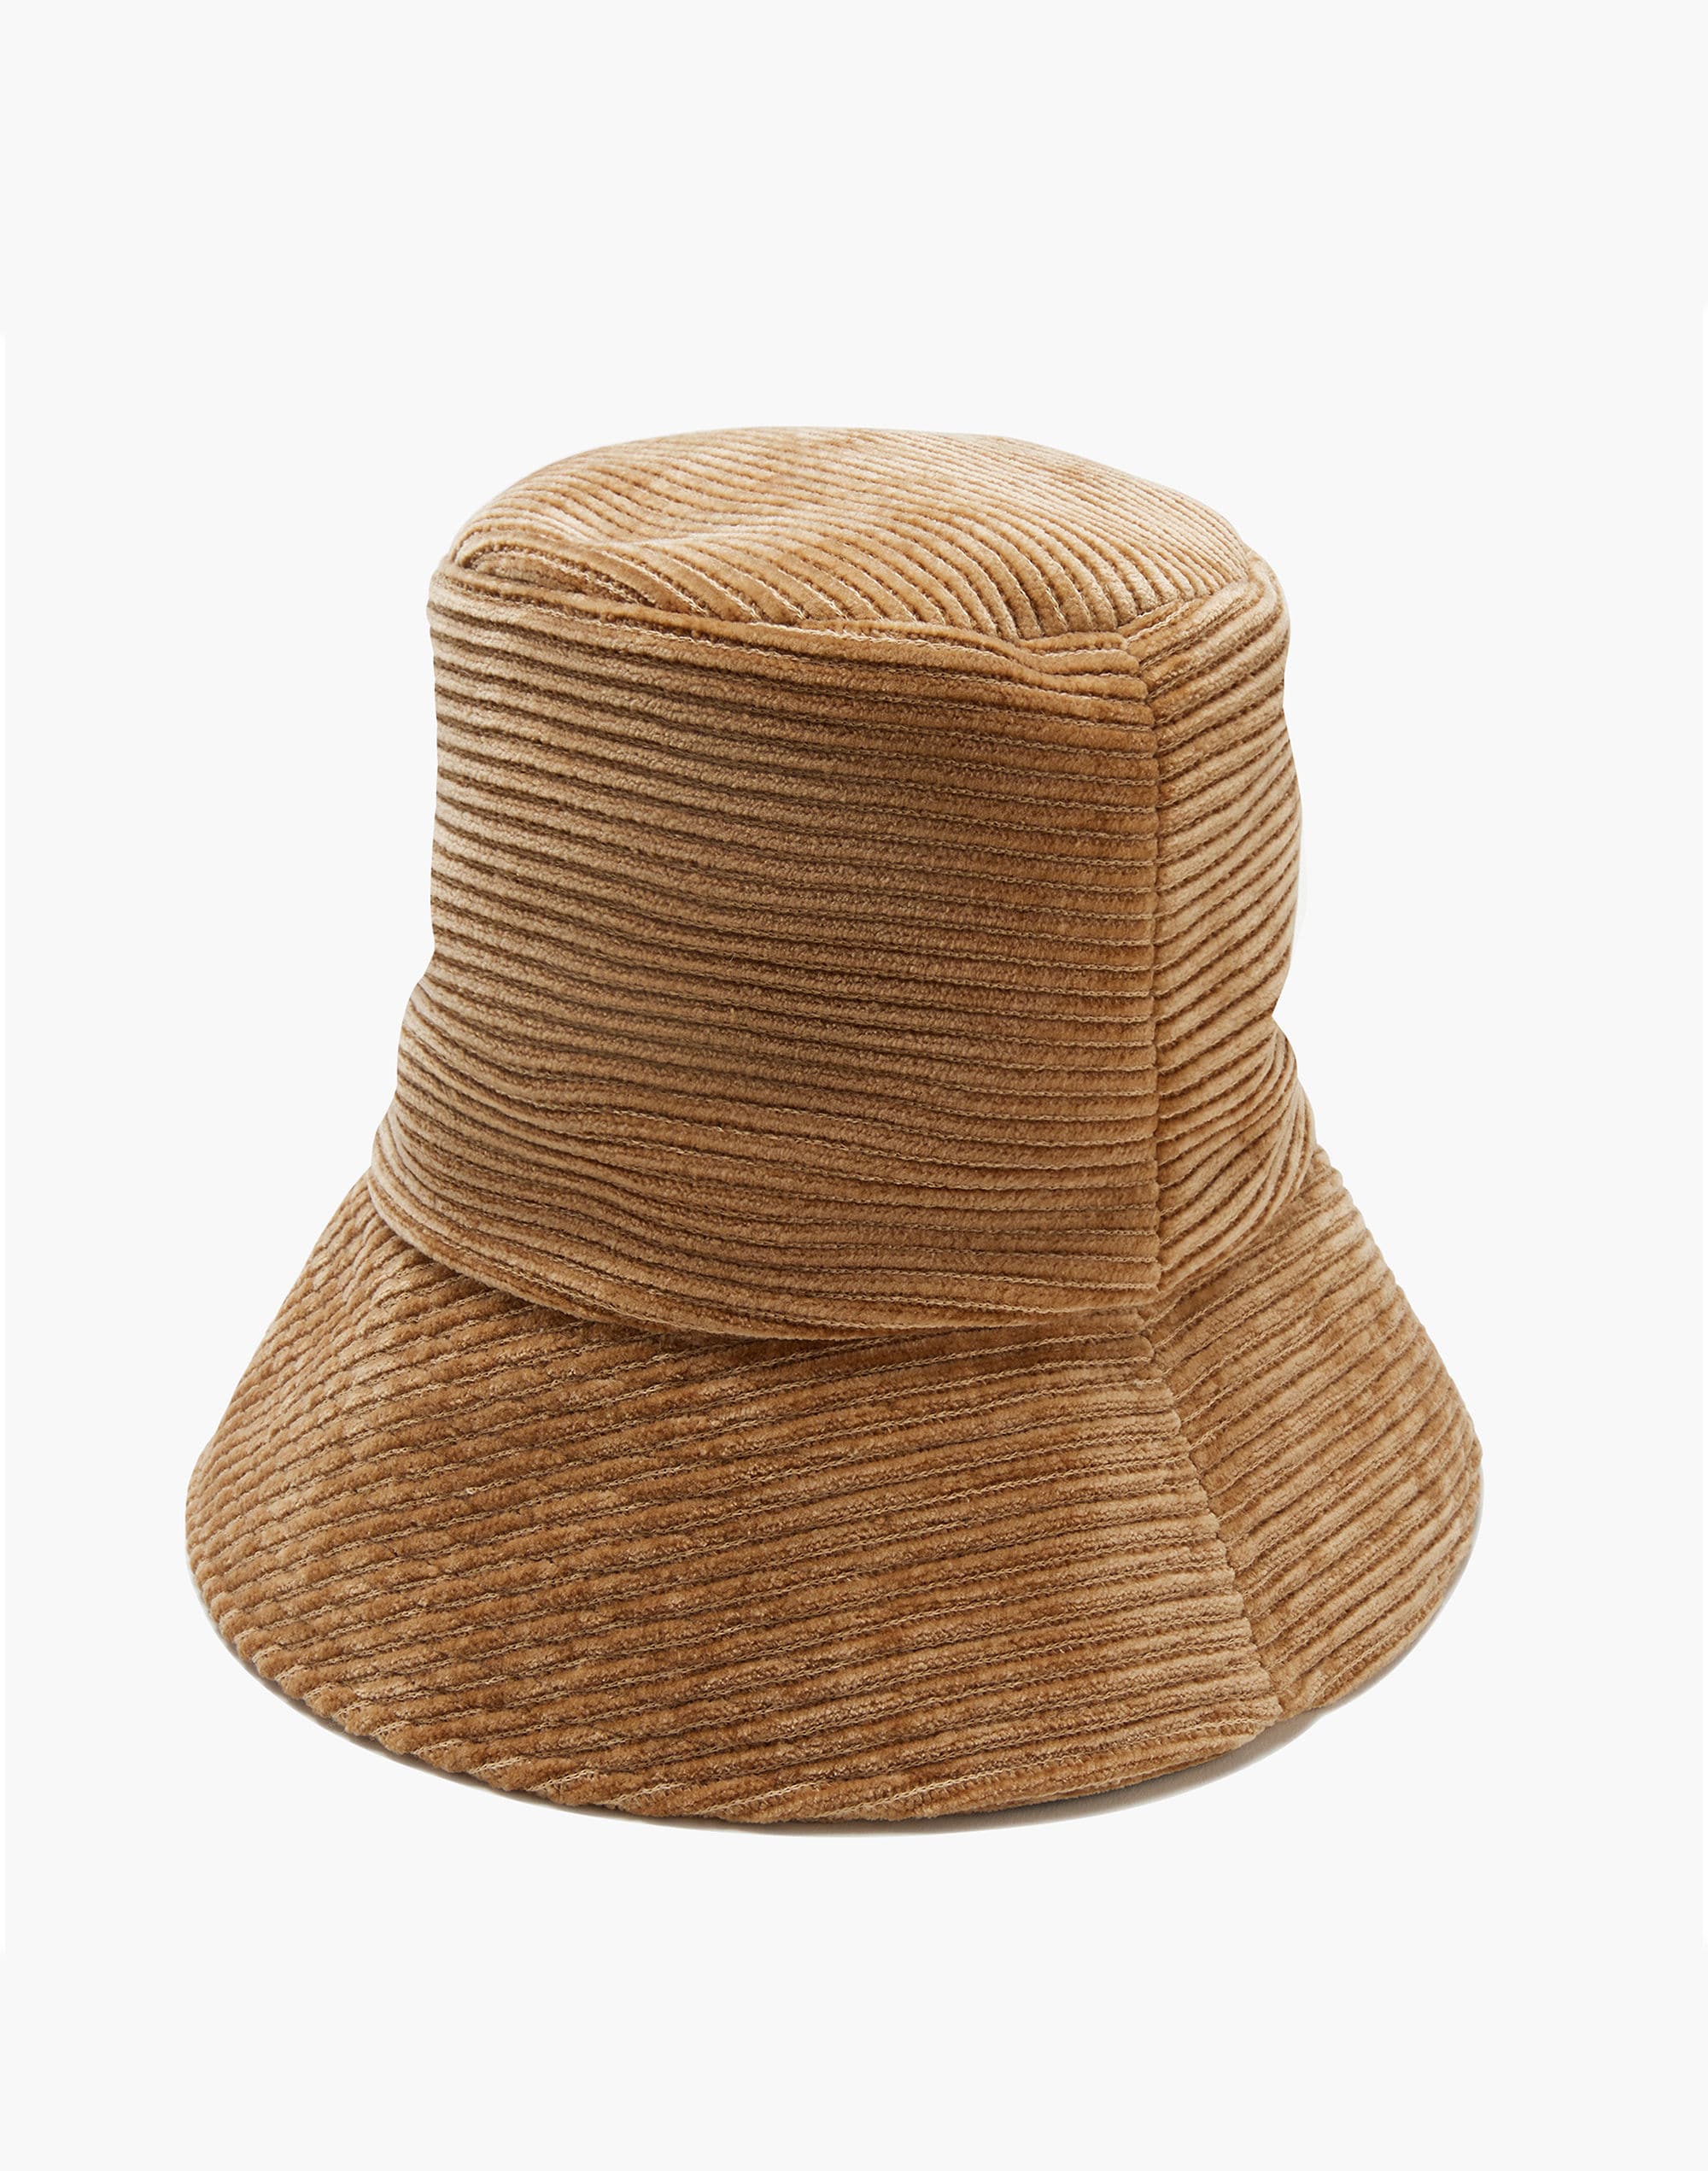 Wyeth Perry Hat